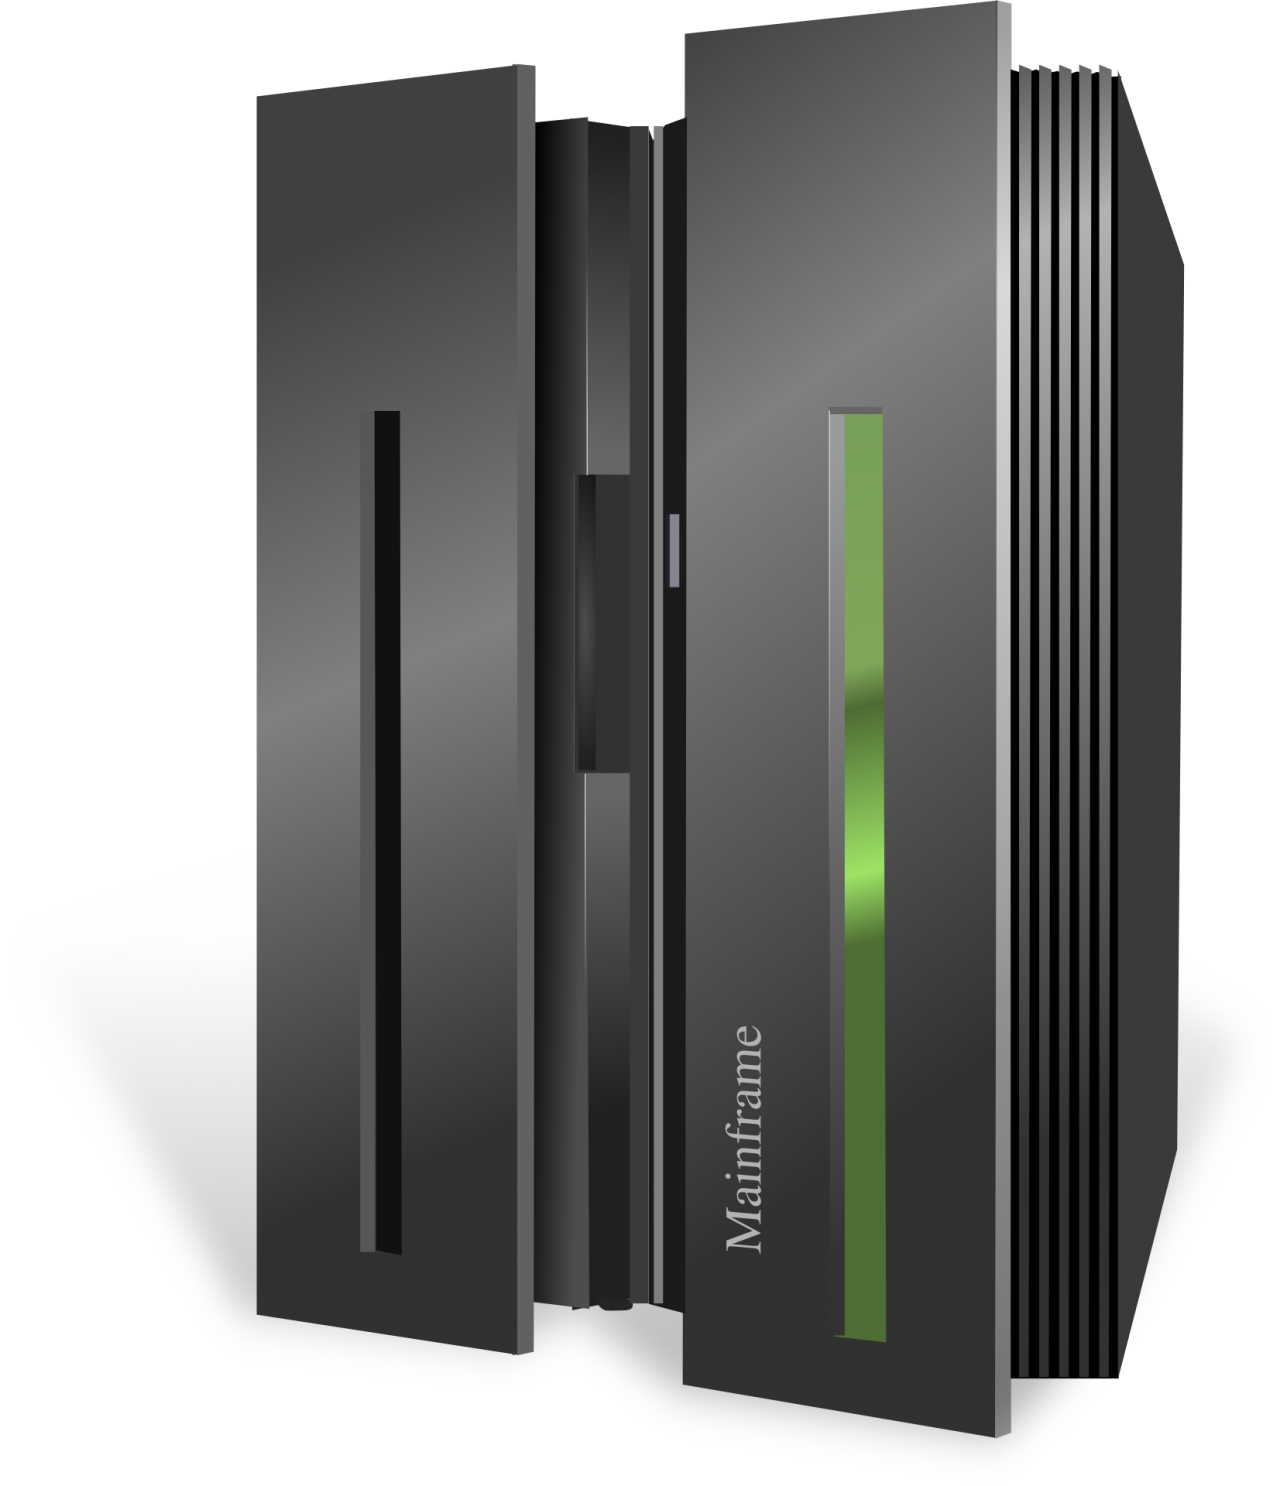 Computer Database Server Hardware Mainframe Servers PNG Image